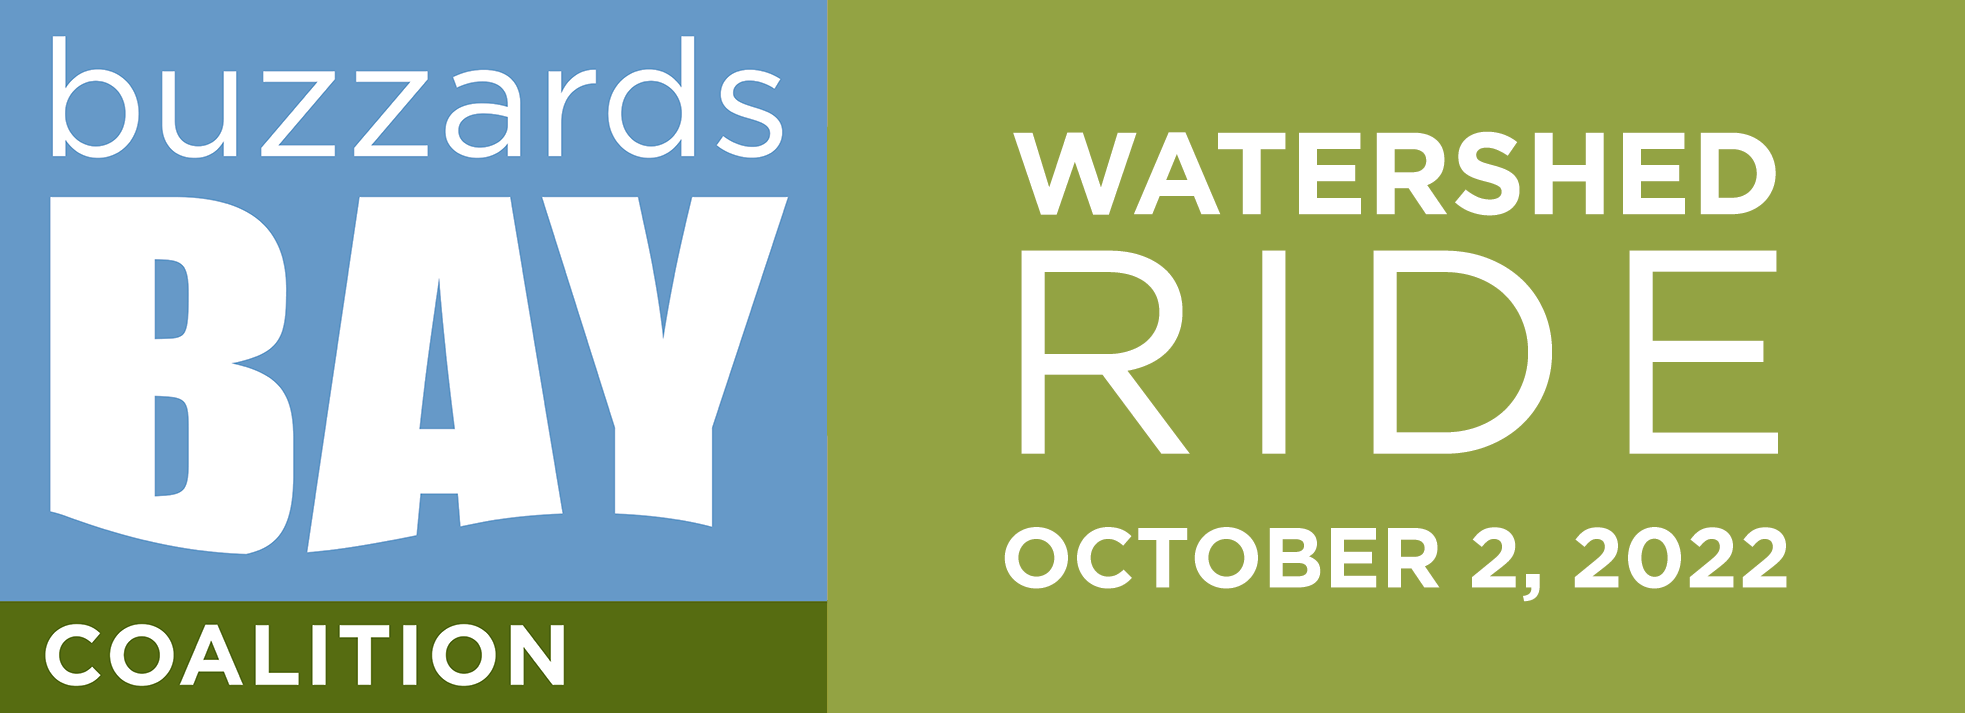 Buzzards Bay Watershed Ride - October 2, 2022